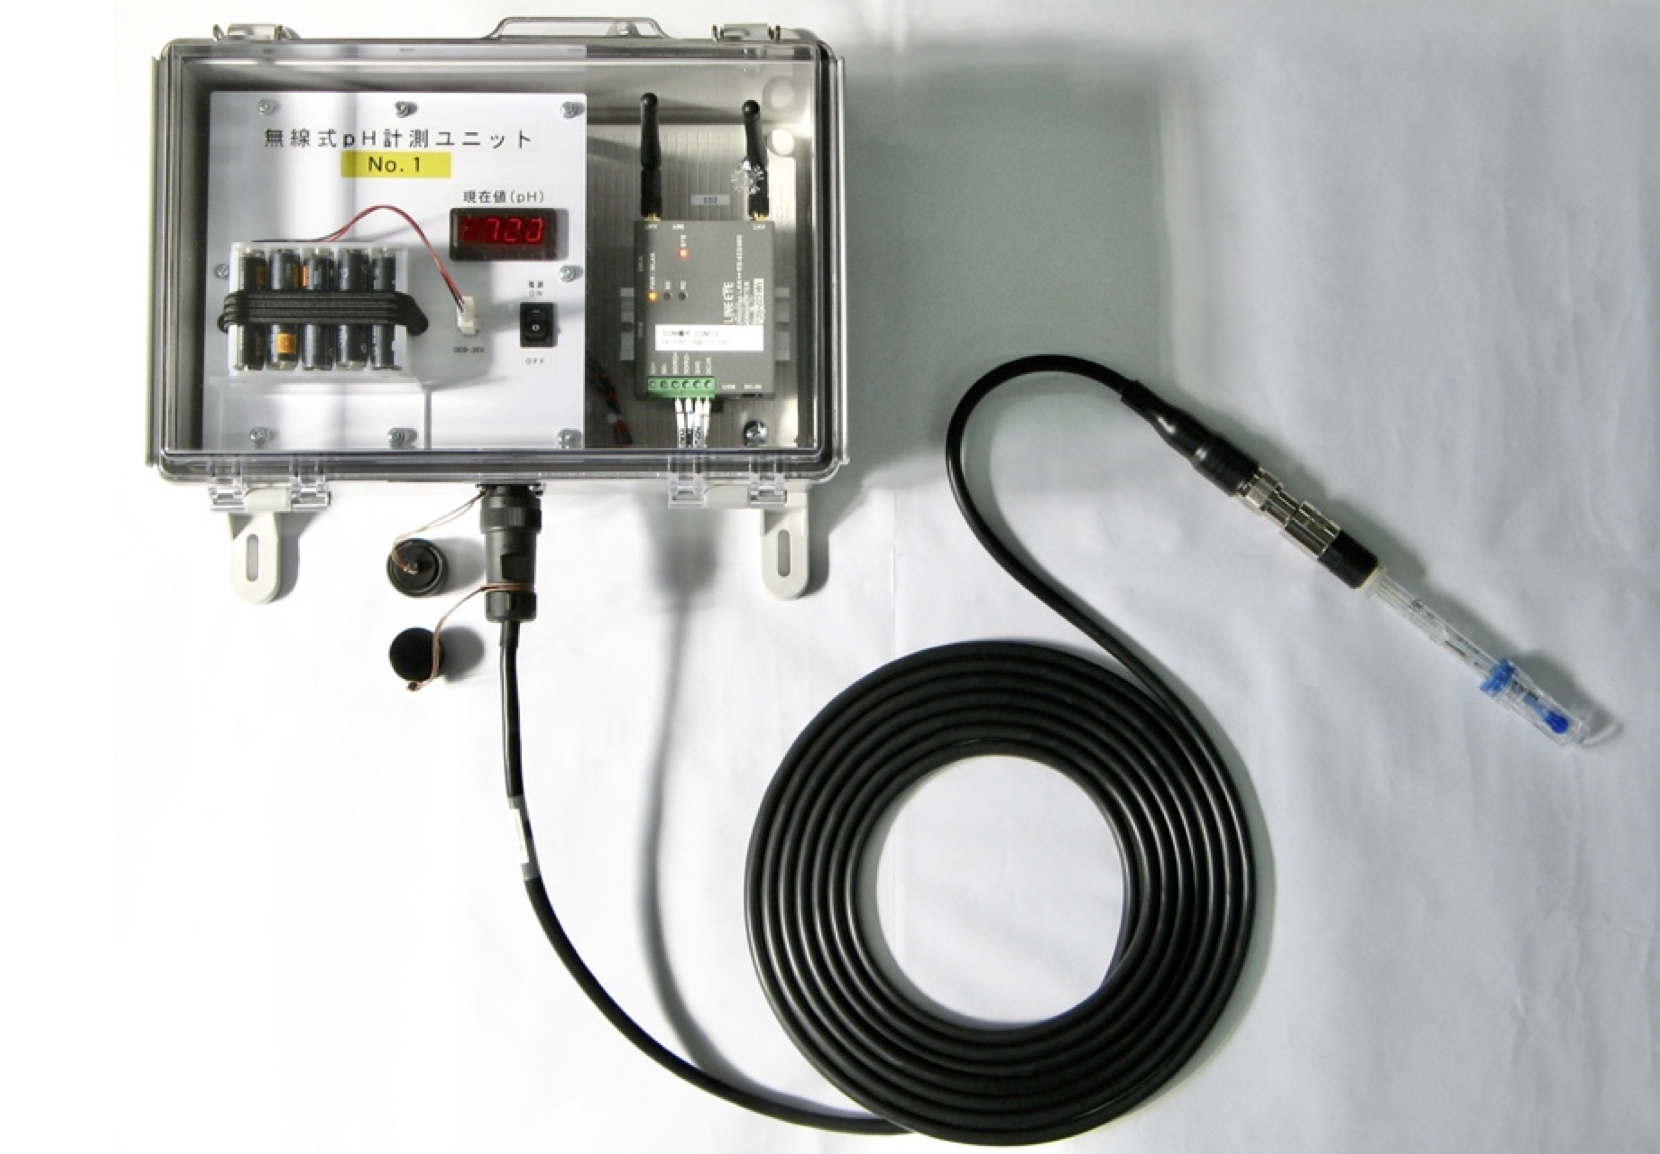 ハミルトン アークミラーワイステーション pHセンサー接続例 | Hamilton ARC Mirror Wi Station and pH Sensor